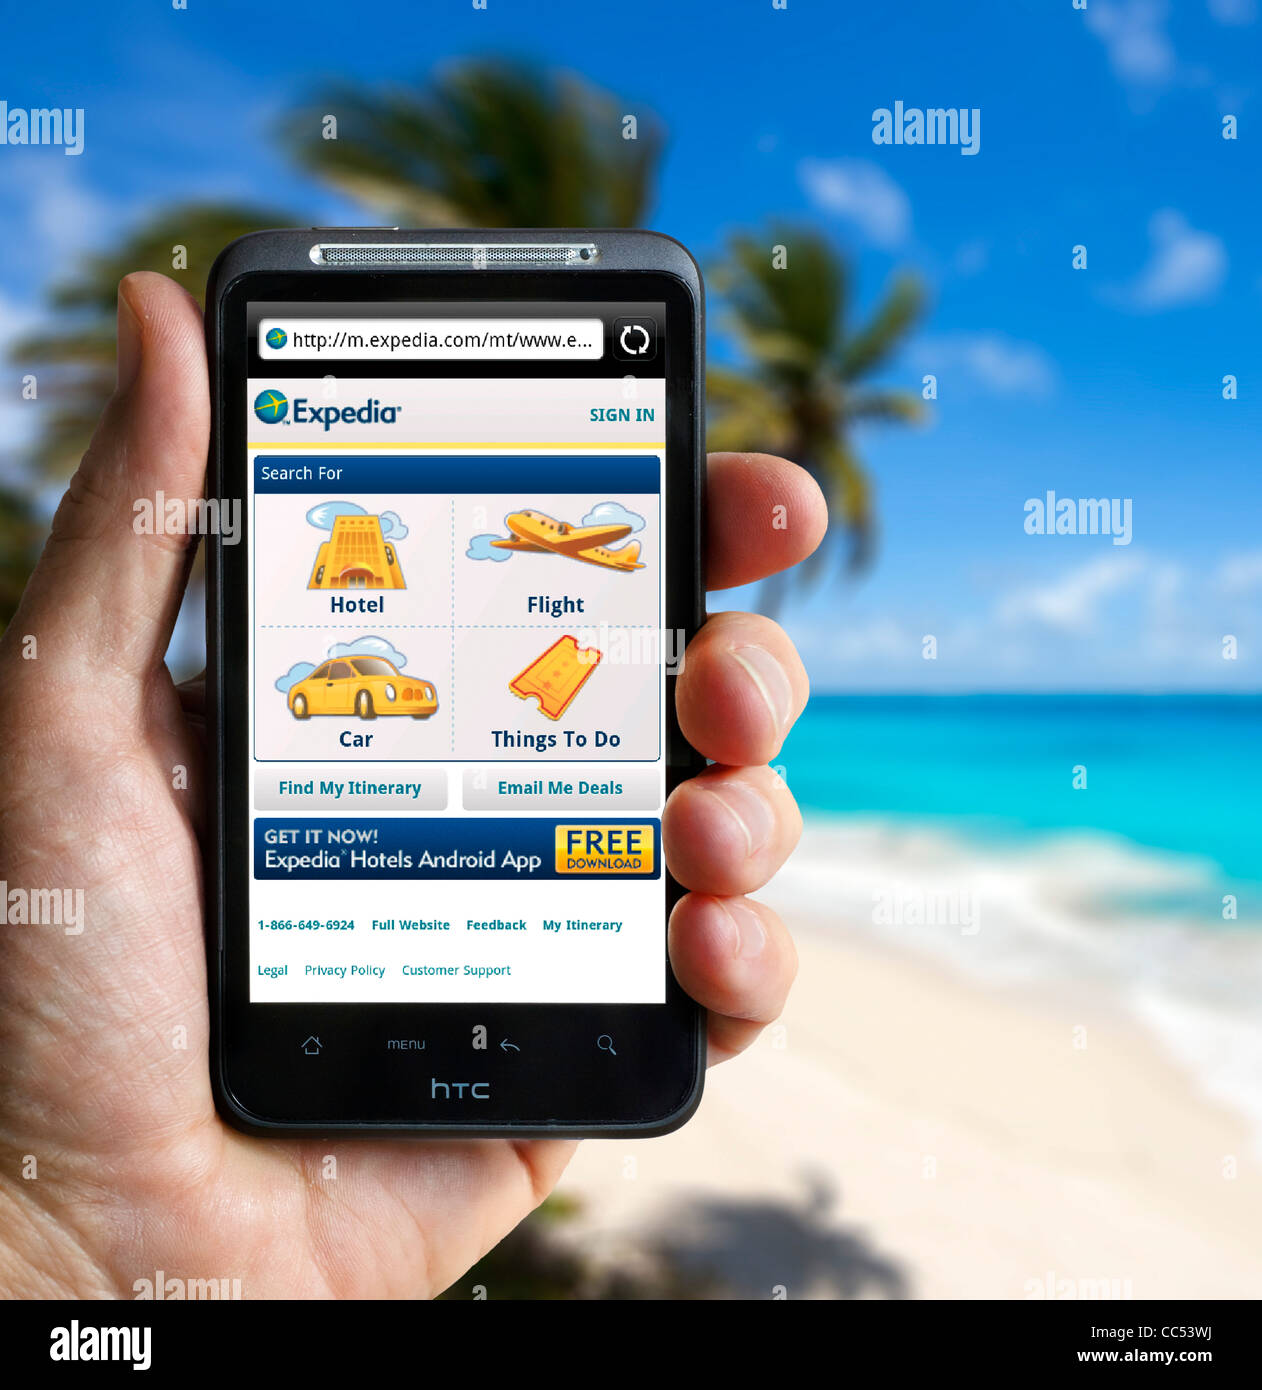 Expedia Reise-Website auf einem HTC-Smartphone Surfen Stockfoto